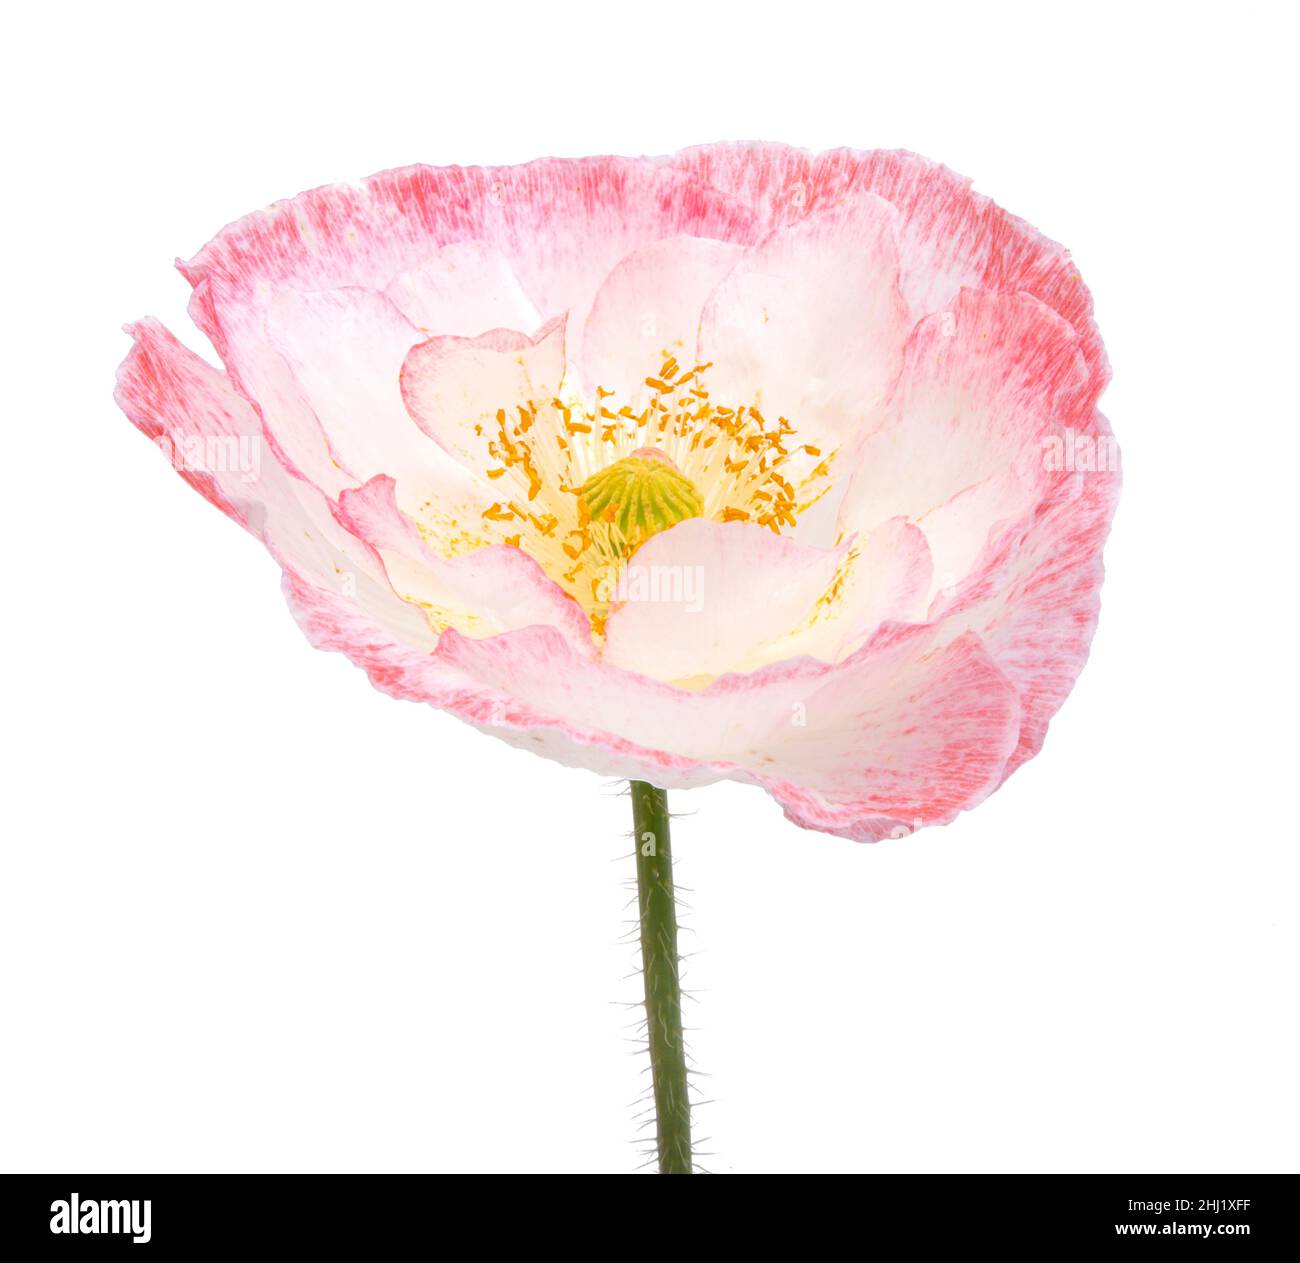 Fleur de pavot blanche et rose isolée sur le blanc Banque D'Images